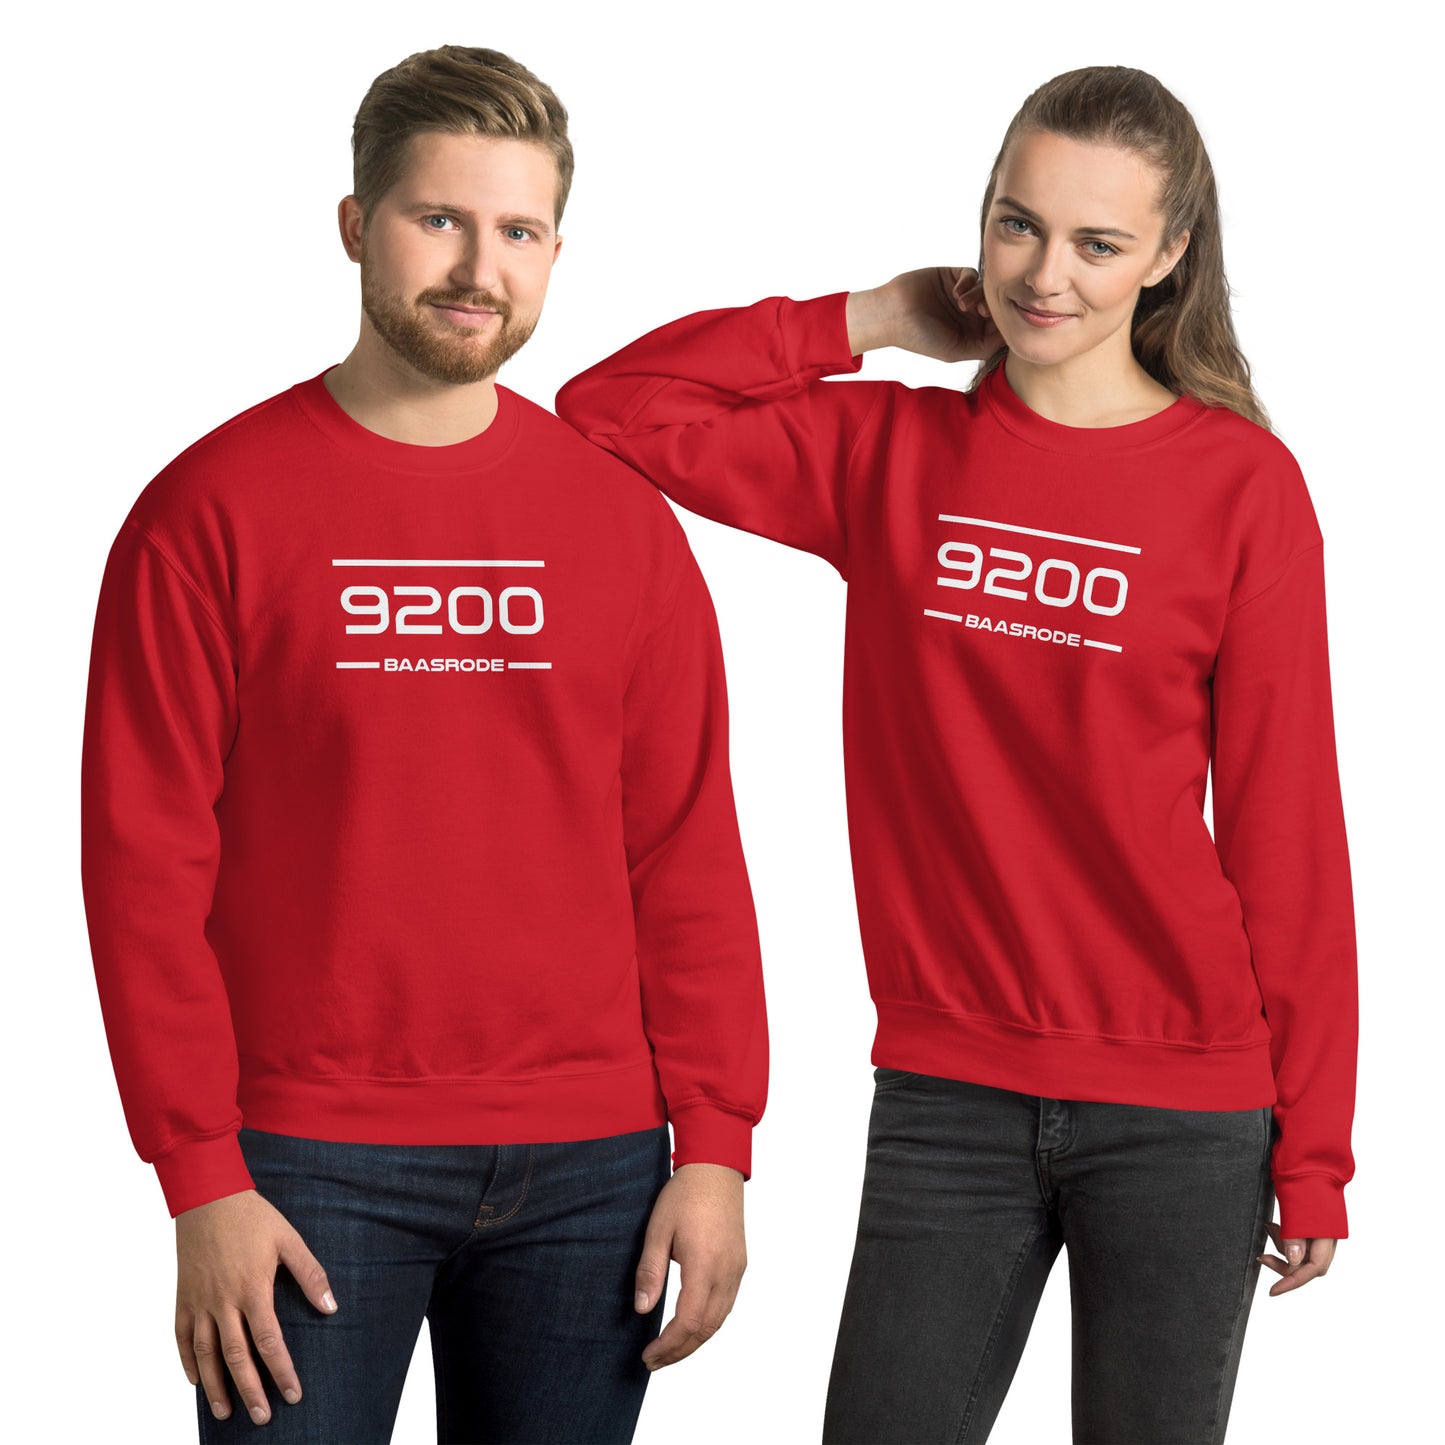 Sweater - 9200 - Baasrode (M/V)